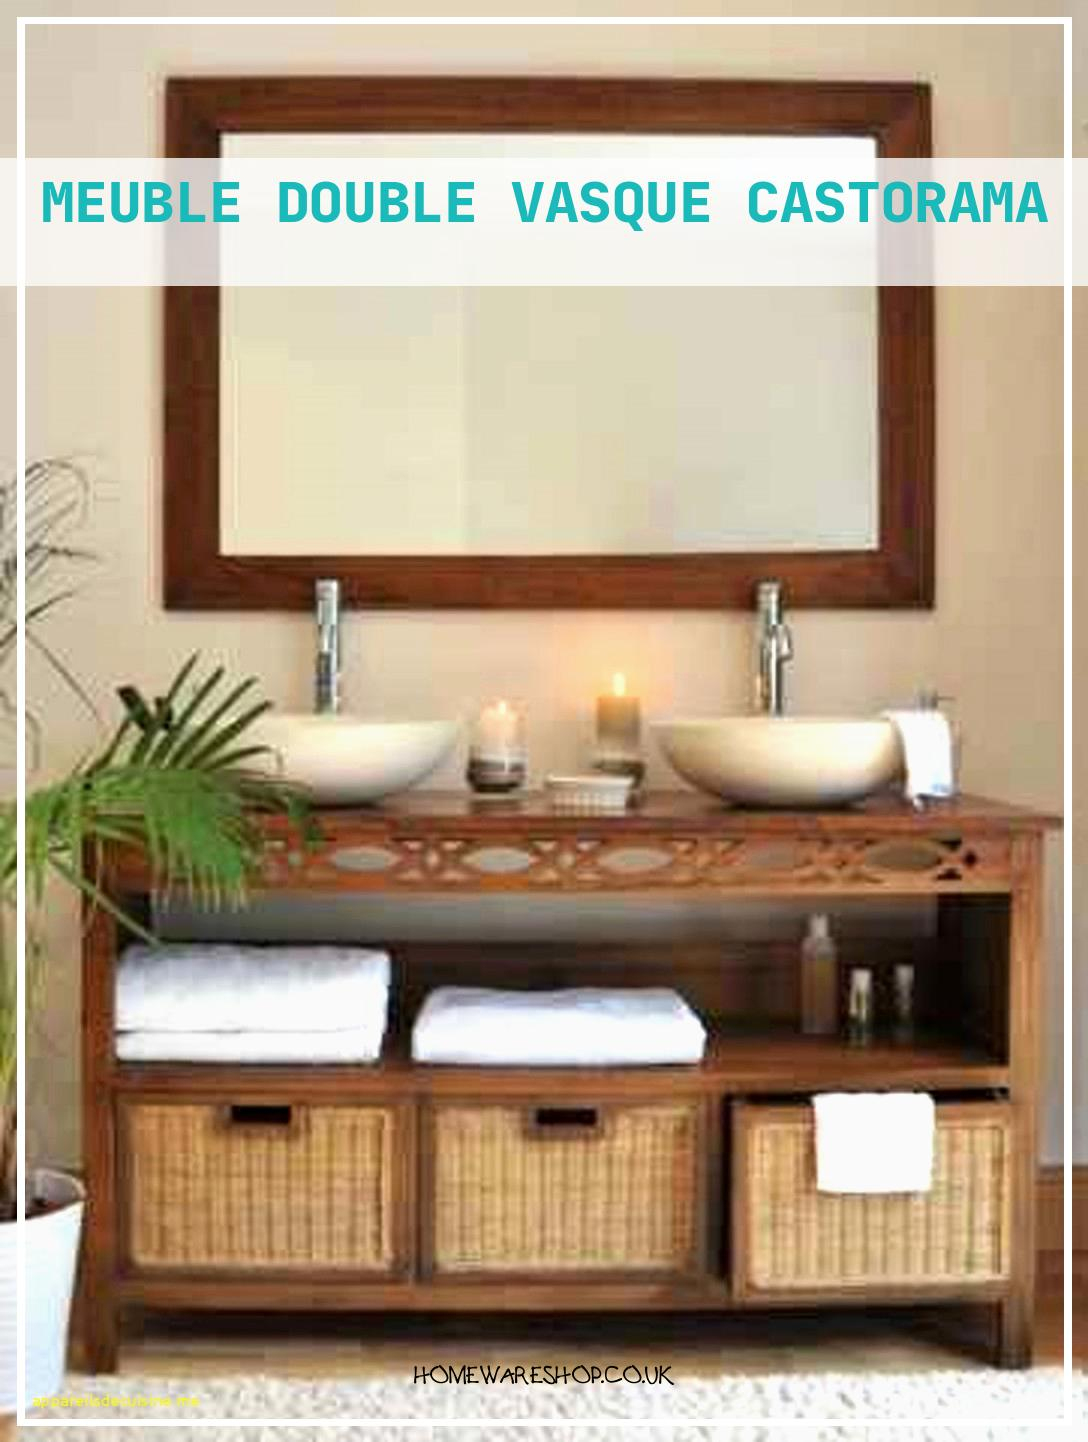 Meuble Double Vasque Salle De Bain Bois – Homewareshop tout Plan De Travail Salle De Bain Castorama